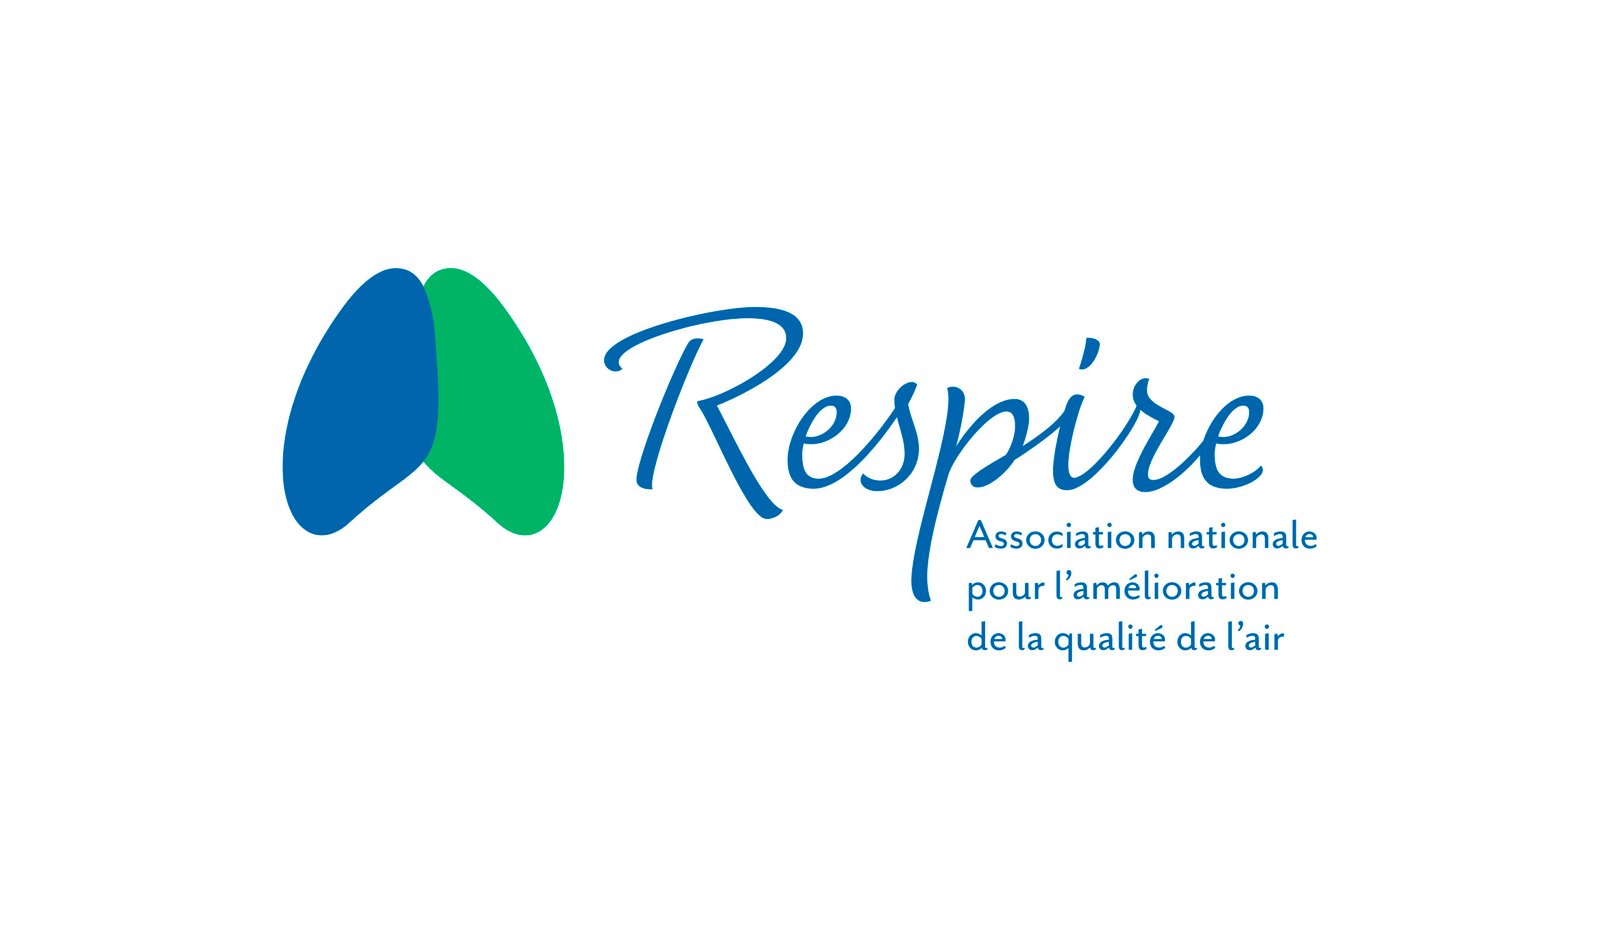 Respire logo